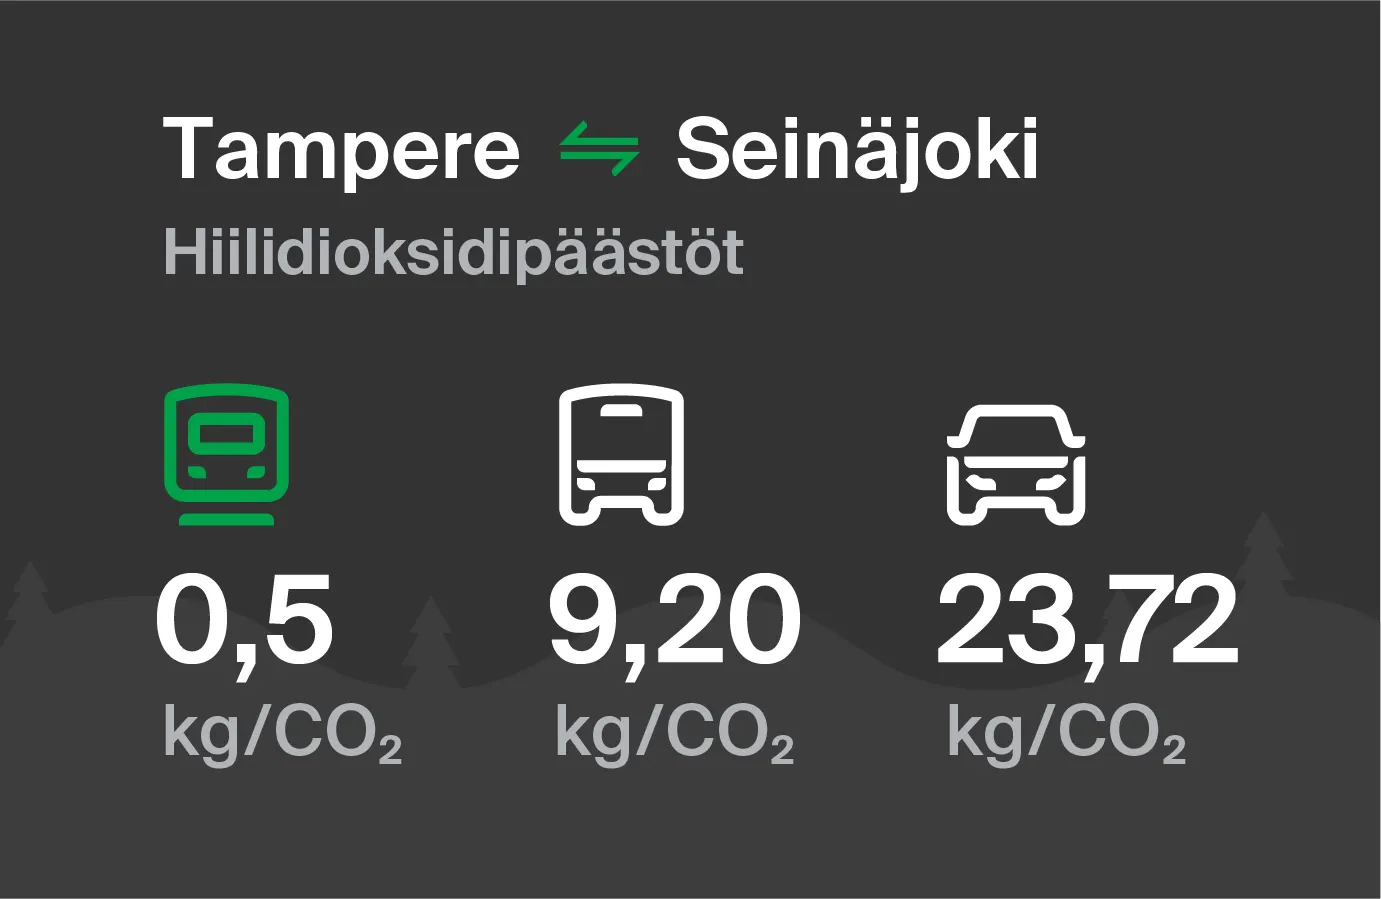 Hiilidioksidipäästöt Tampereelta Seinäjoelle eri kulkuvälinemuodoilla: junalla 0,5 kg/CO2, bussilla 9,20 kg/CO2 ja autolla 23,72 kg/CO2.